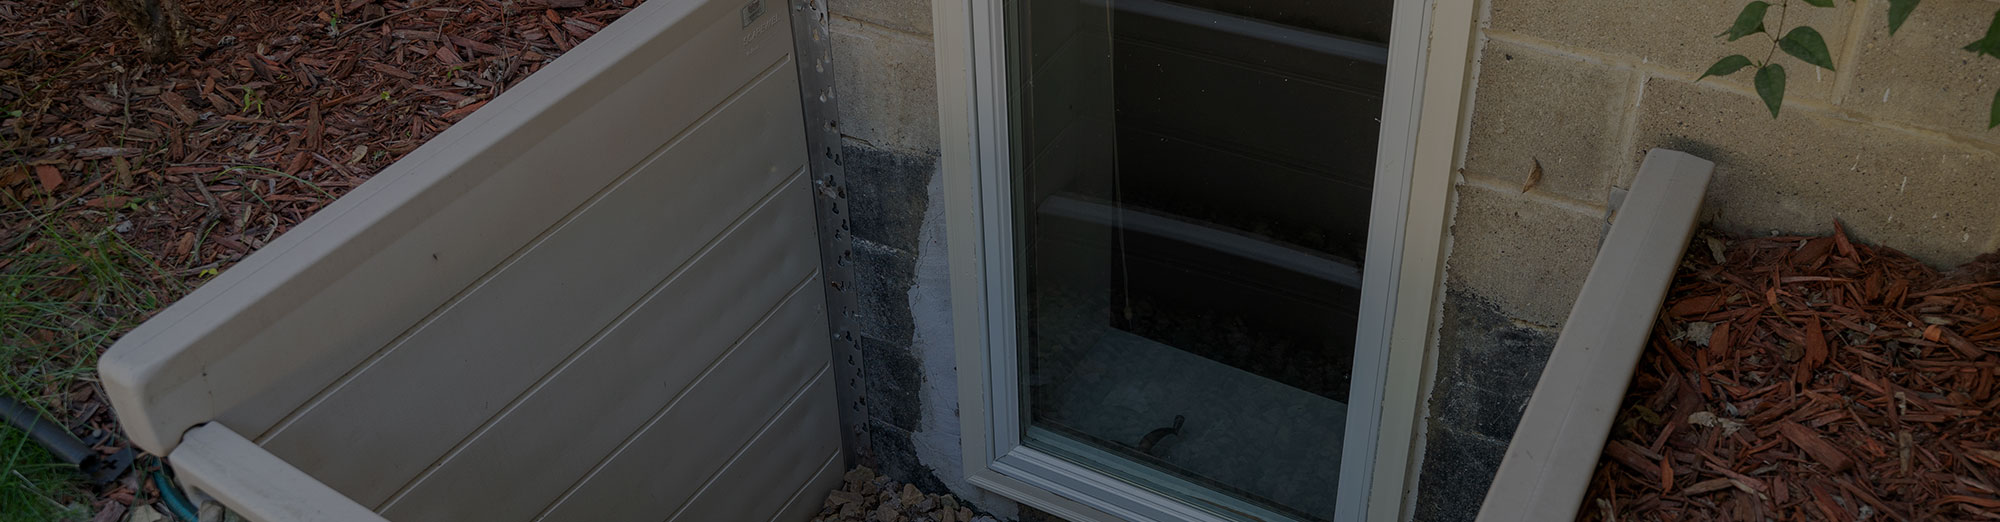 egress window replacement in Wisconsin